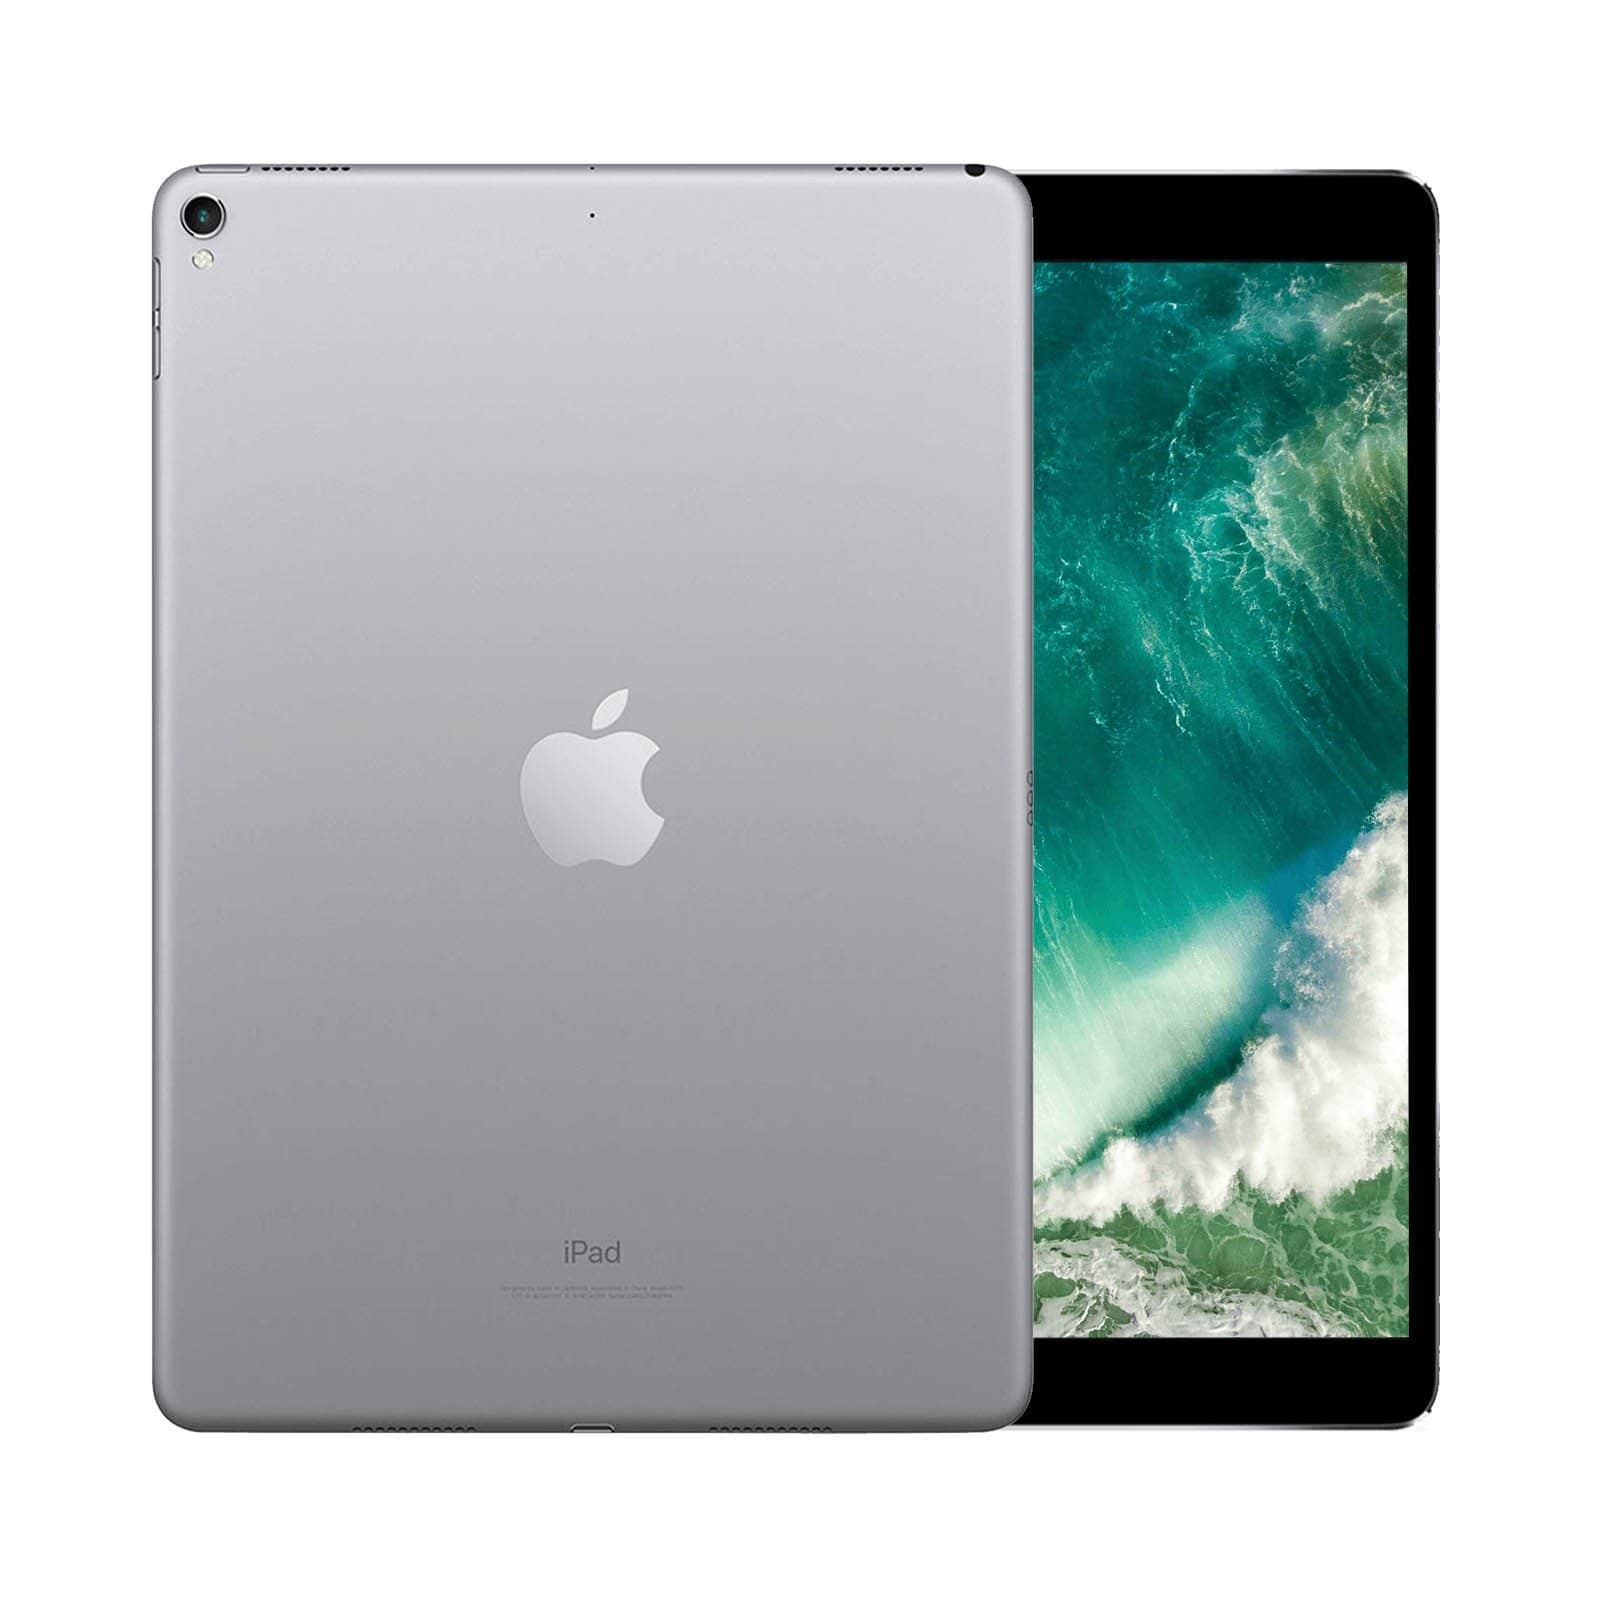 iPad Pro 10.5 Inch 512GB Space Grey Pristine - WiFi 512GB Space Grey Pristine